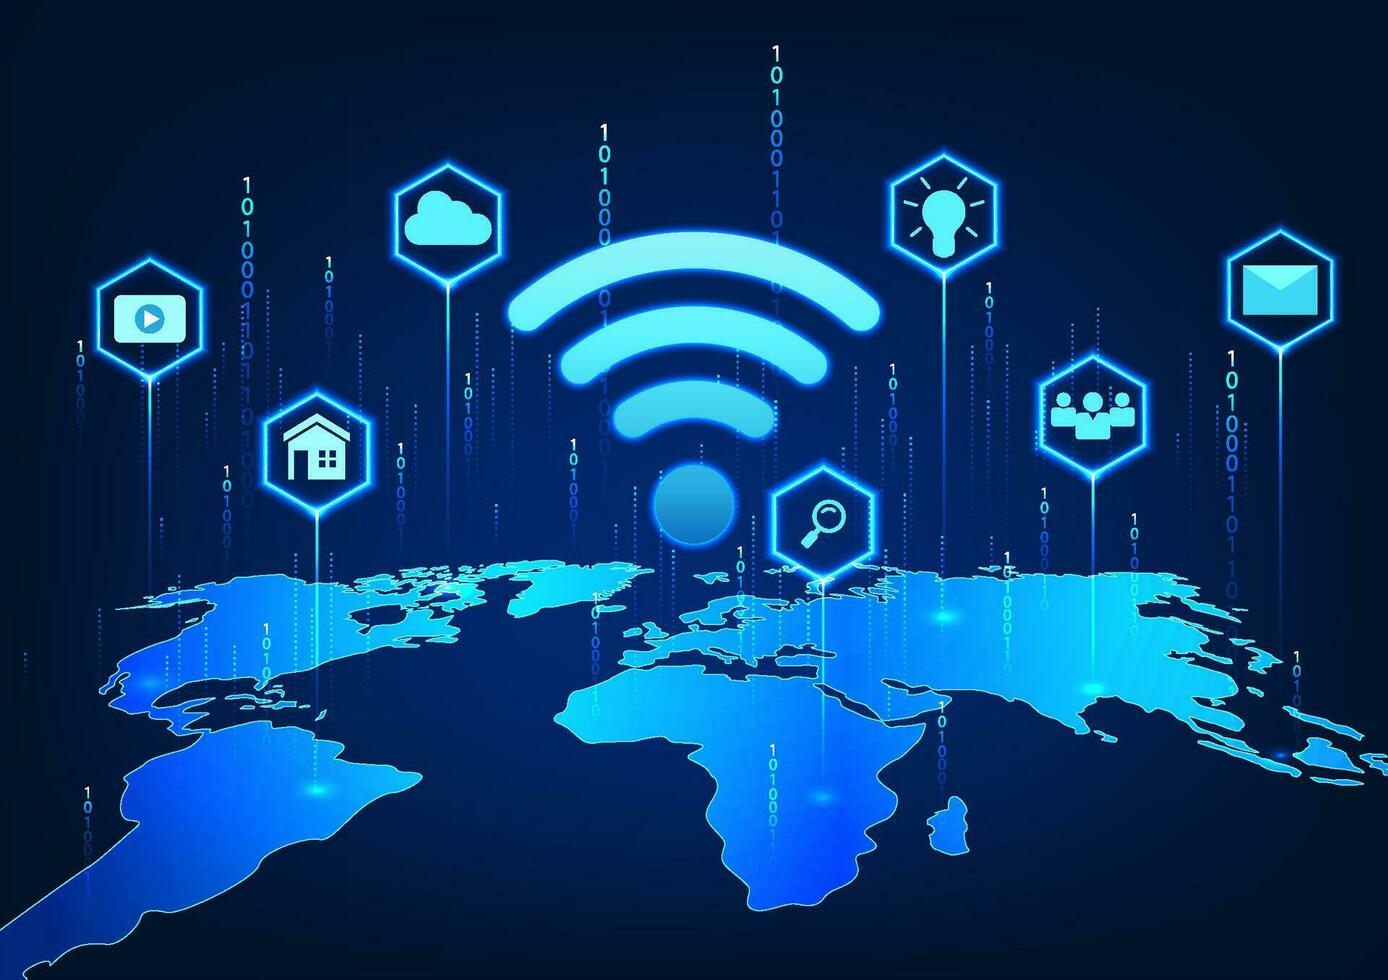 Wifi tecnología en el mundo mapa con íconos y detrás el número código se refiere a el Wifi tecnología usado en todo el mundo para acceso a entretenimiento, comunicación, y trabajar. vector